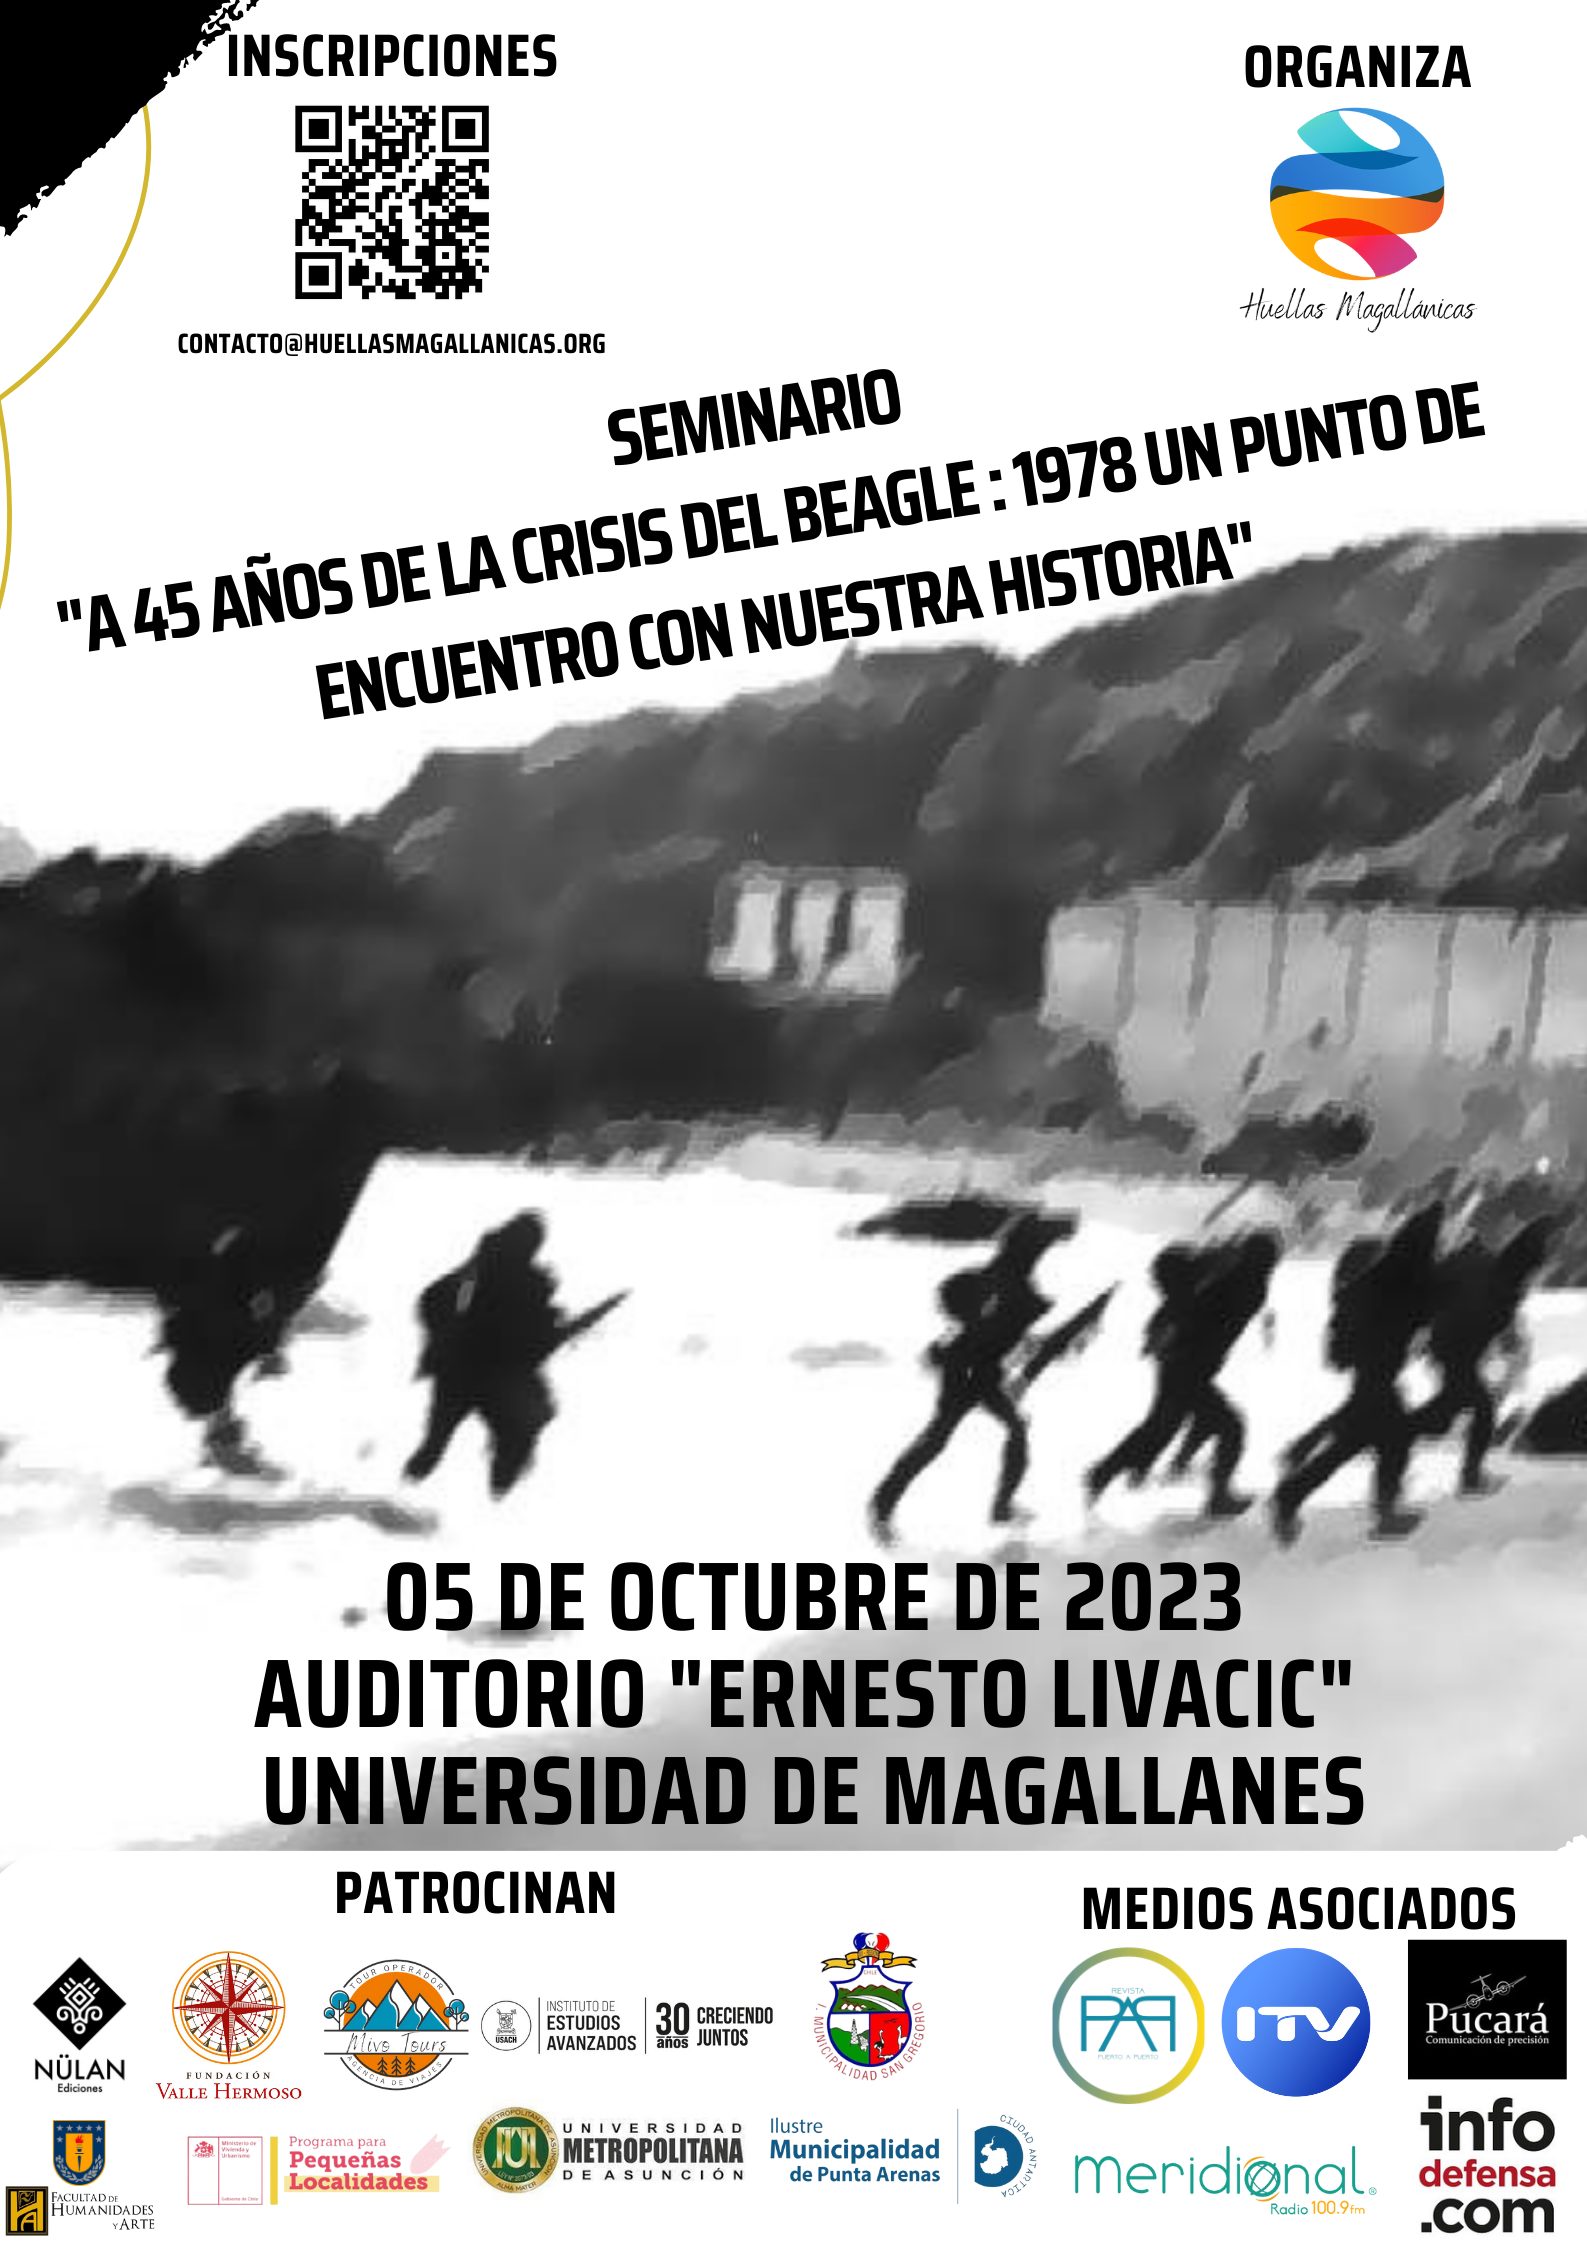 “A 45 años de la crisis del Beagle: un punto de encuentro con nuestra historia” | Seminario sobre la crisis de 1978 entre Chile y Argentina